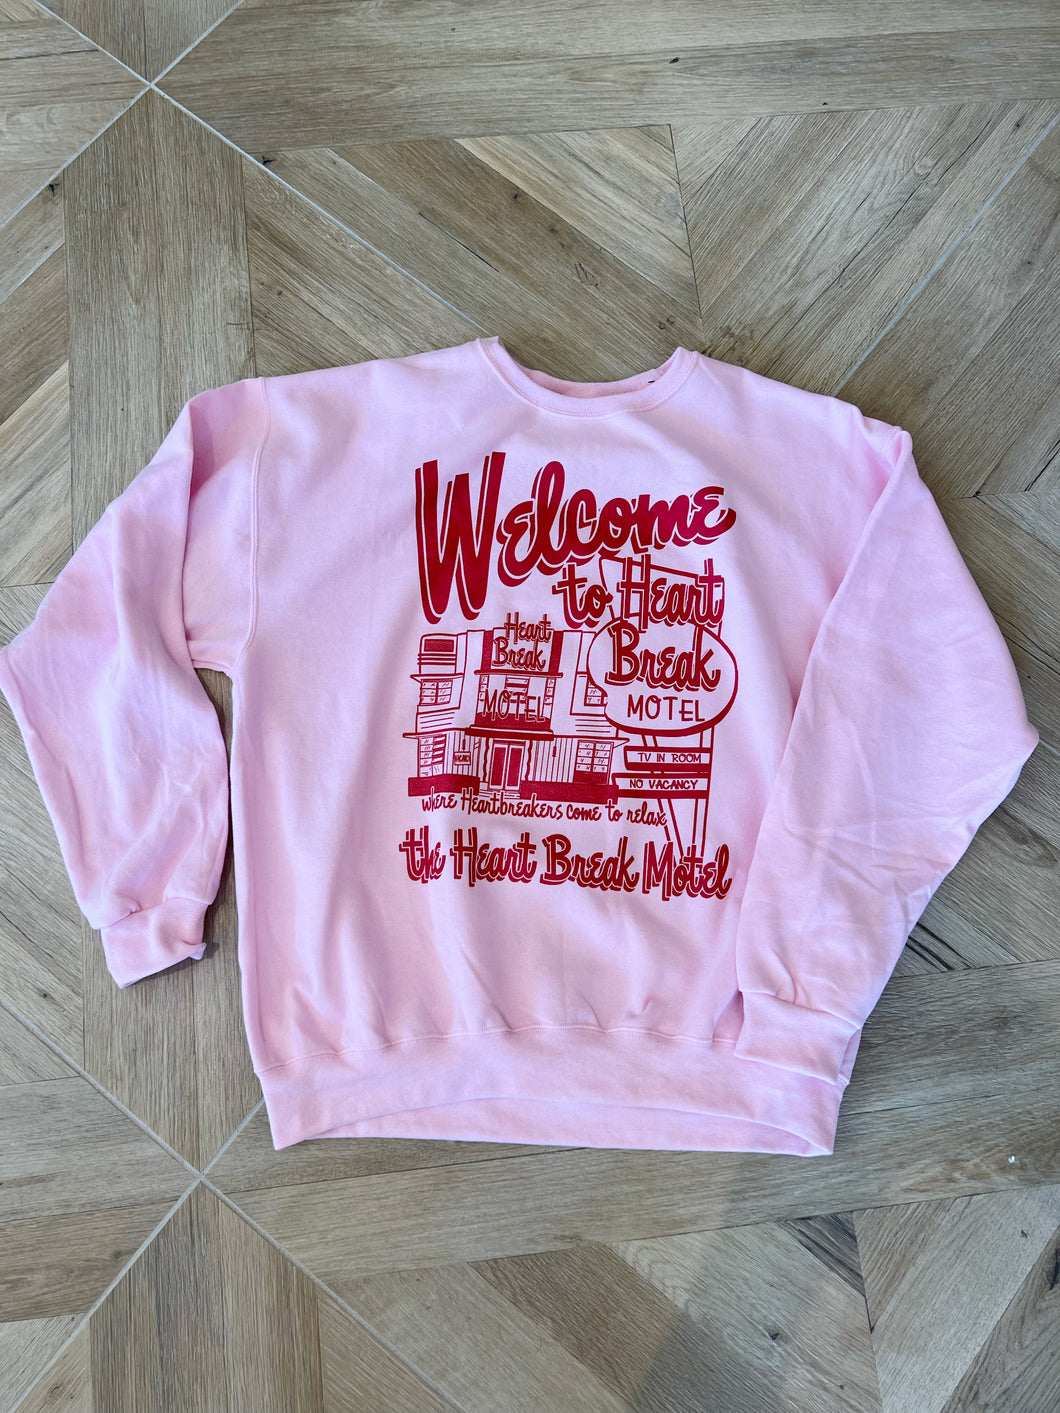 Oversized 90's Fit, Heart Break Motel Sweatshirt